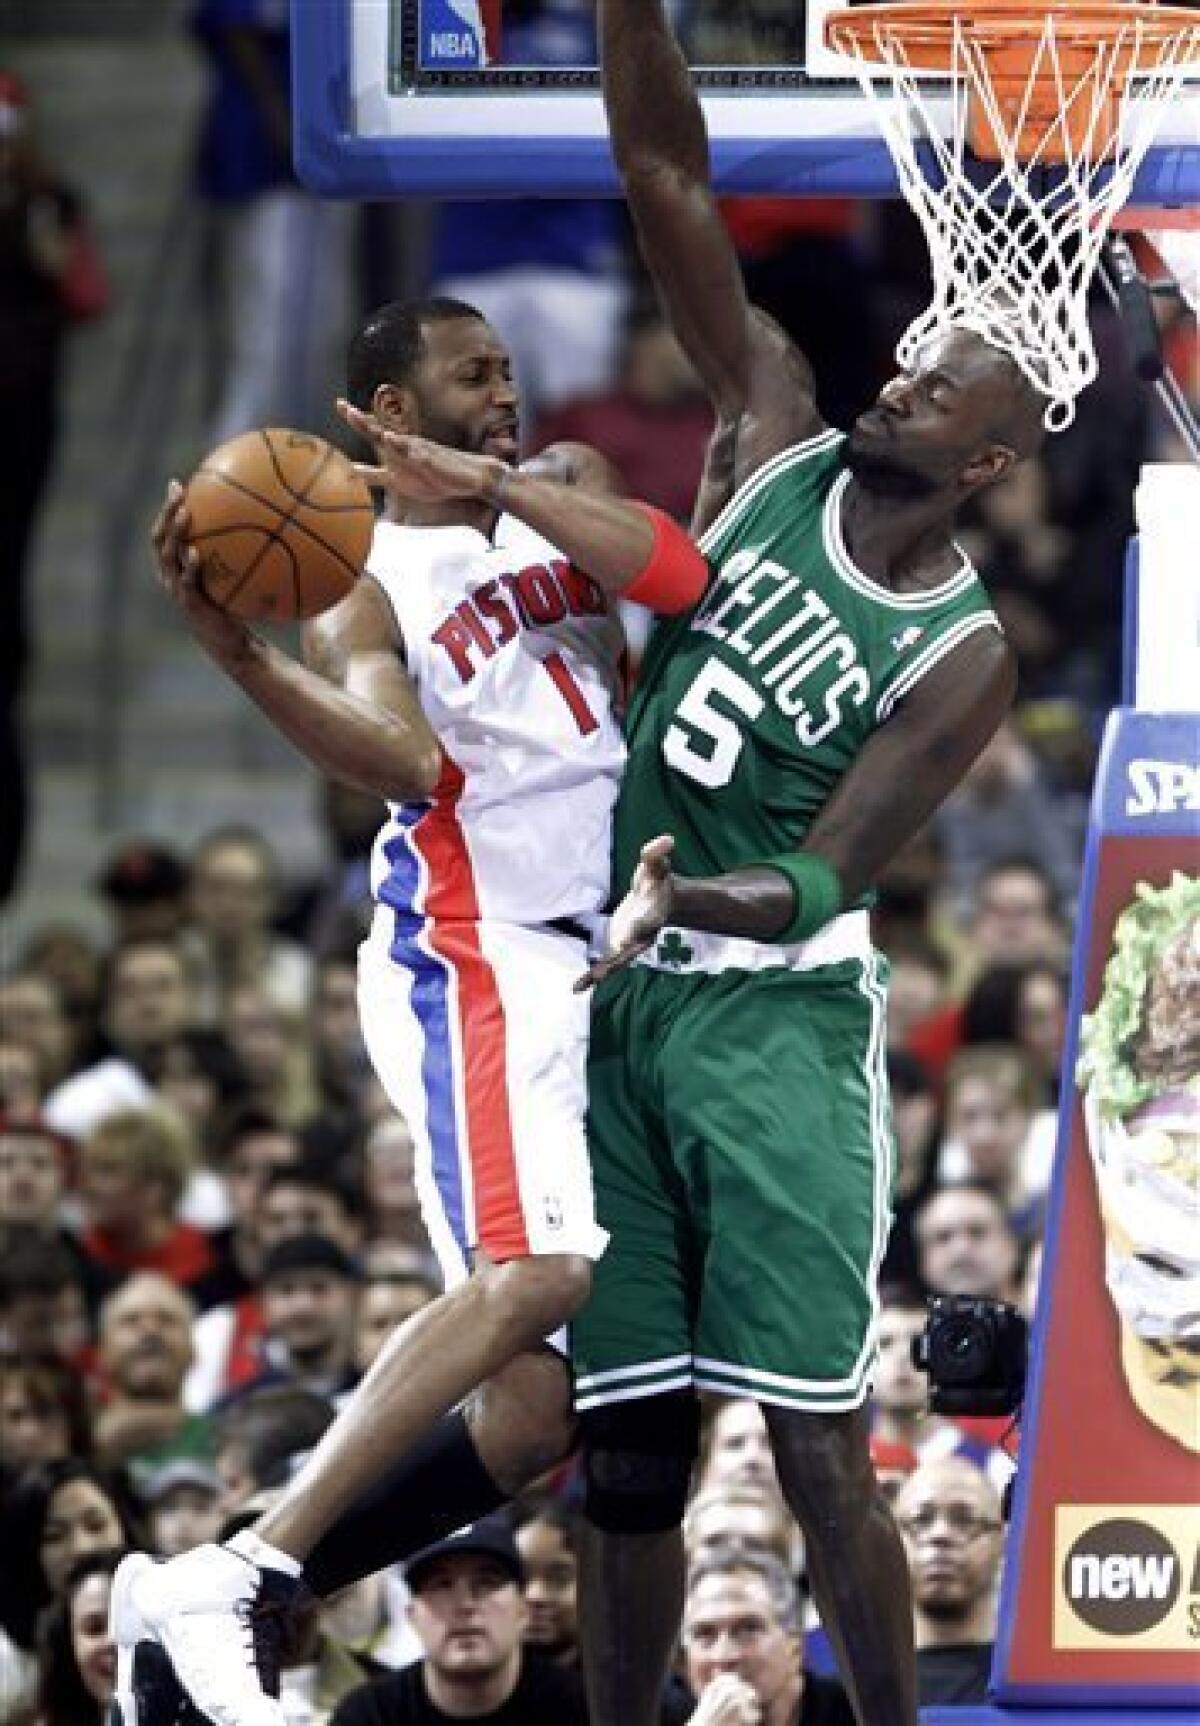 Kevin Garnett injured in Boston Celtics game against Detroit Pistons 